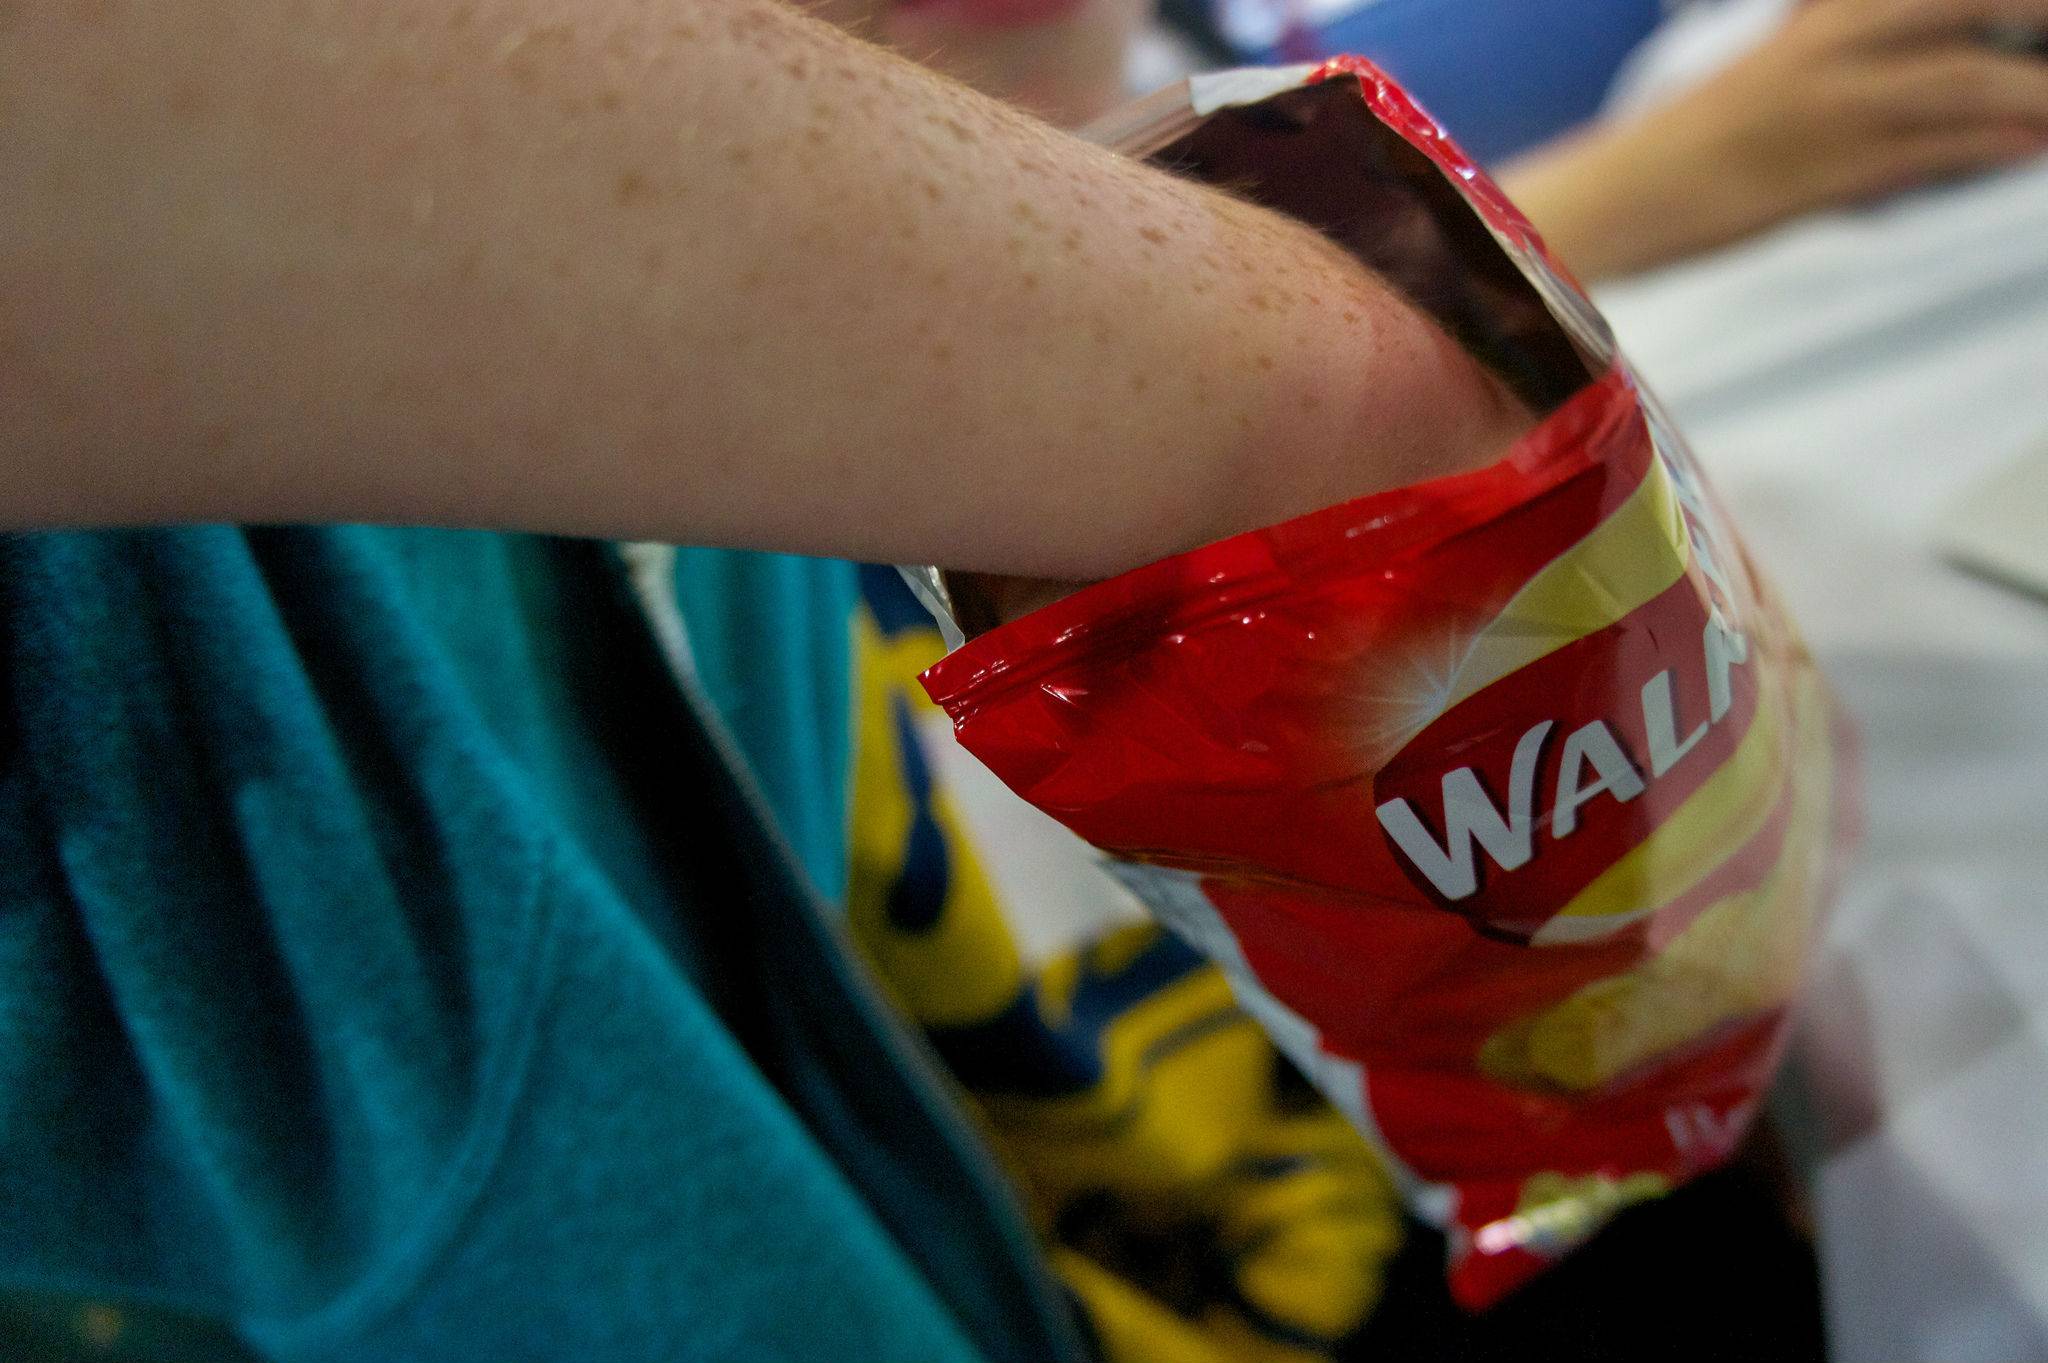 Brits skip meals for snacks